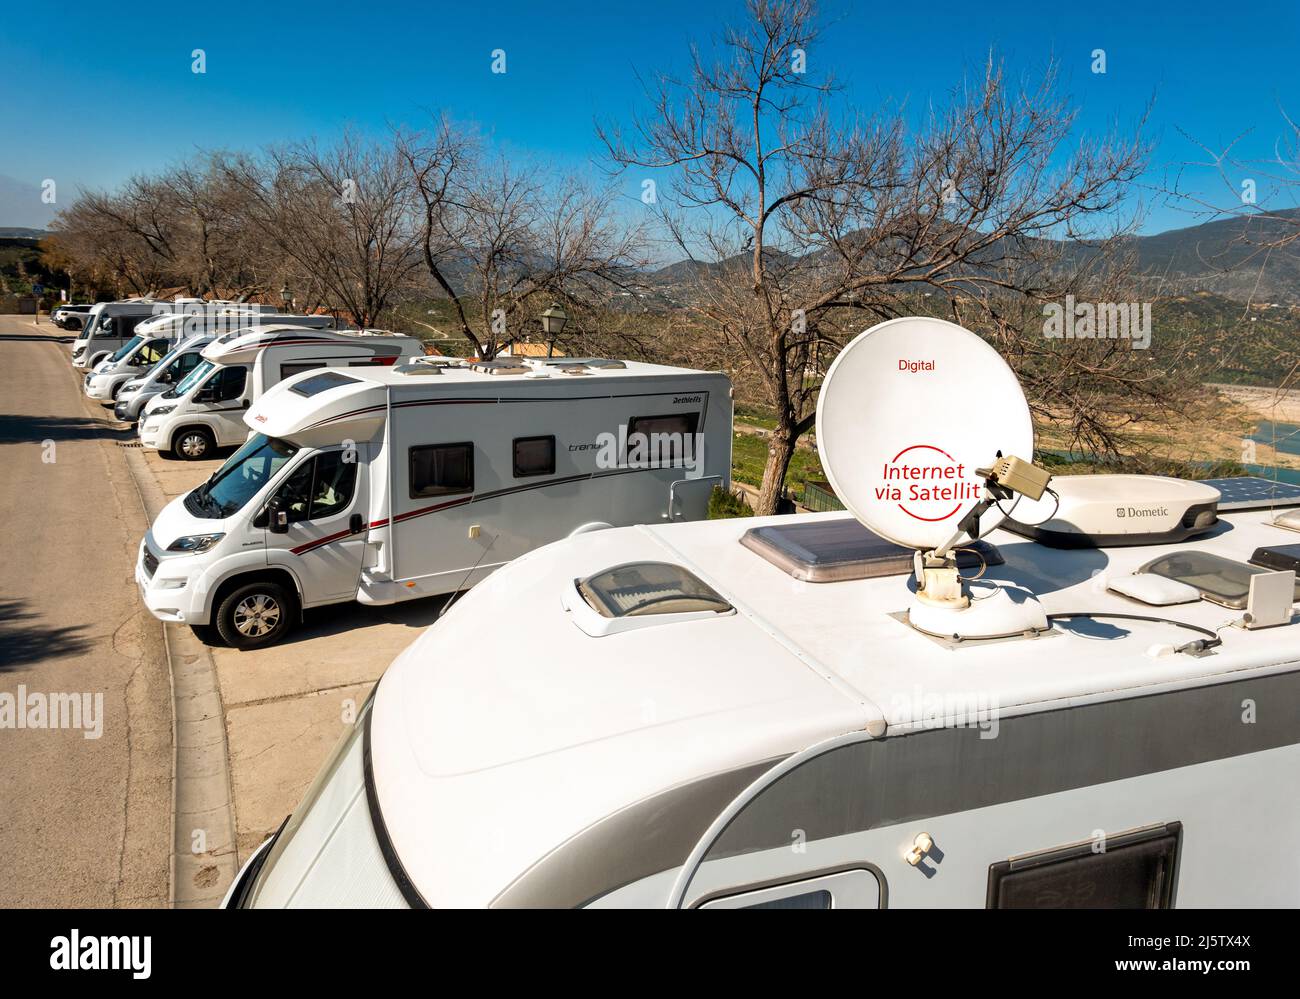 Camper van campervan autocaravana autocaravana con Internet digital vía satélite. Zahara de la Sierra Andalucía Sur España Febrero invierno. Foto de stock